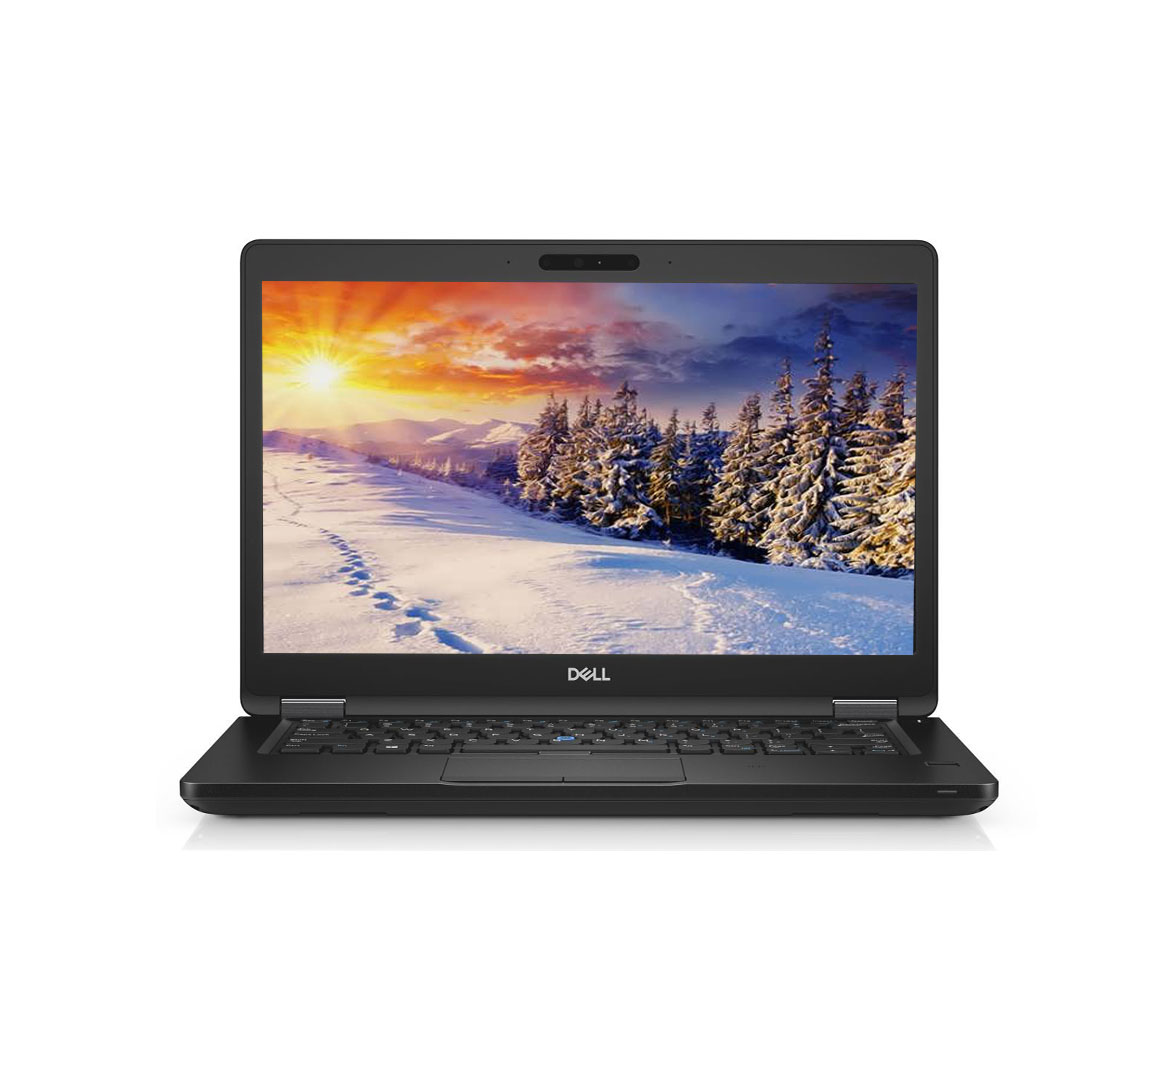 Dell Latitude E5490 Business Laptop, Intel Core i5-7th Gen CPU, 8GB RAM, 256GB SSD, 14 inch Display, Windows 10 Pro